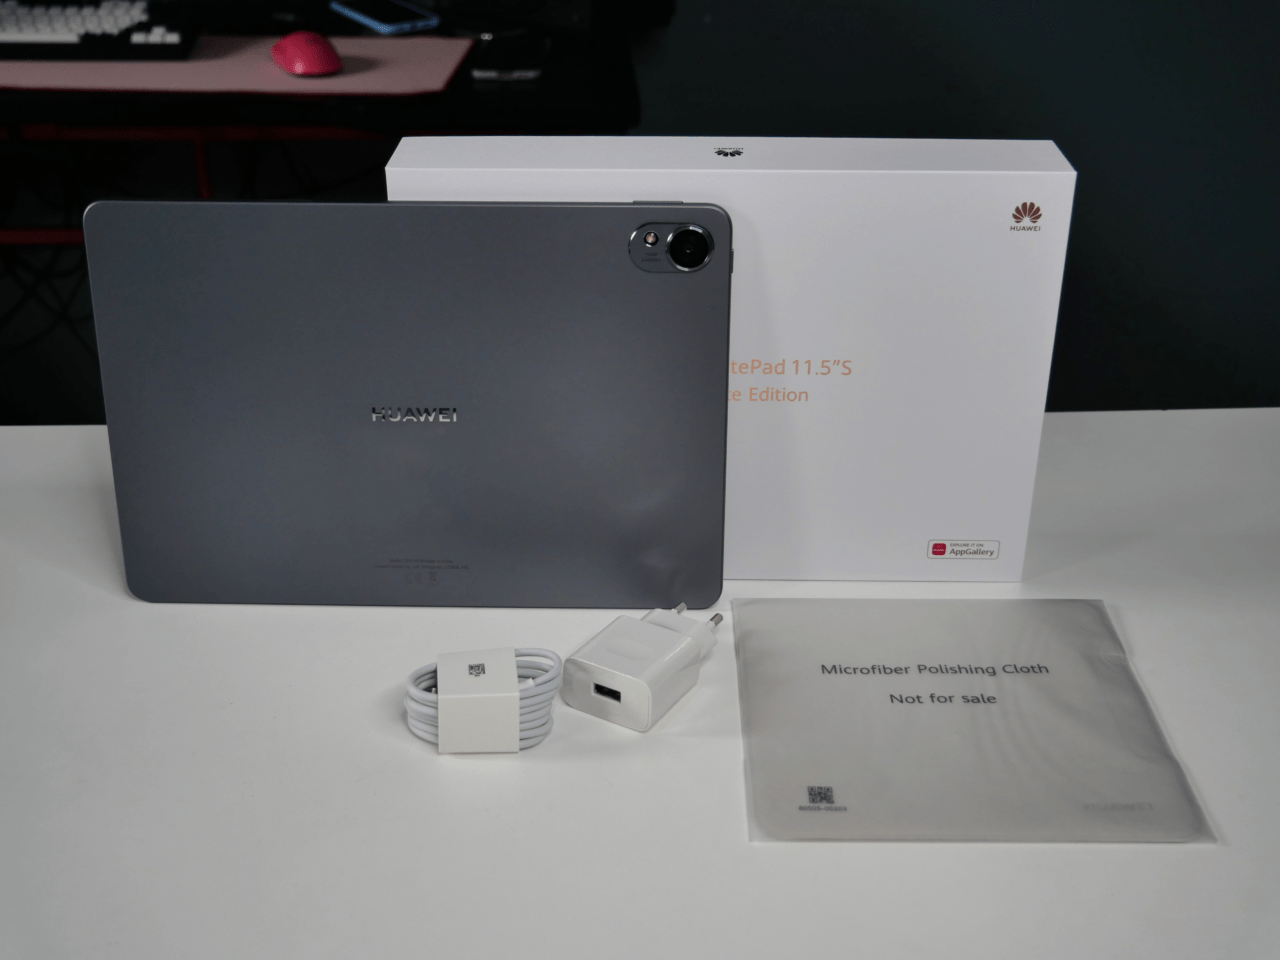 Tablet Huawei z akcesoriami: ładowarką, kablem USB i ściereczką z mikrofibry, oraz pudełkiem w tle.